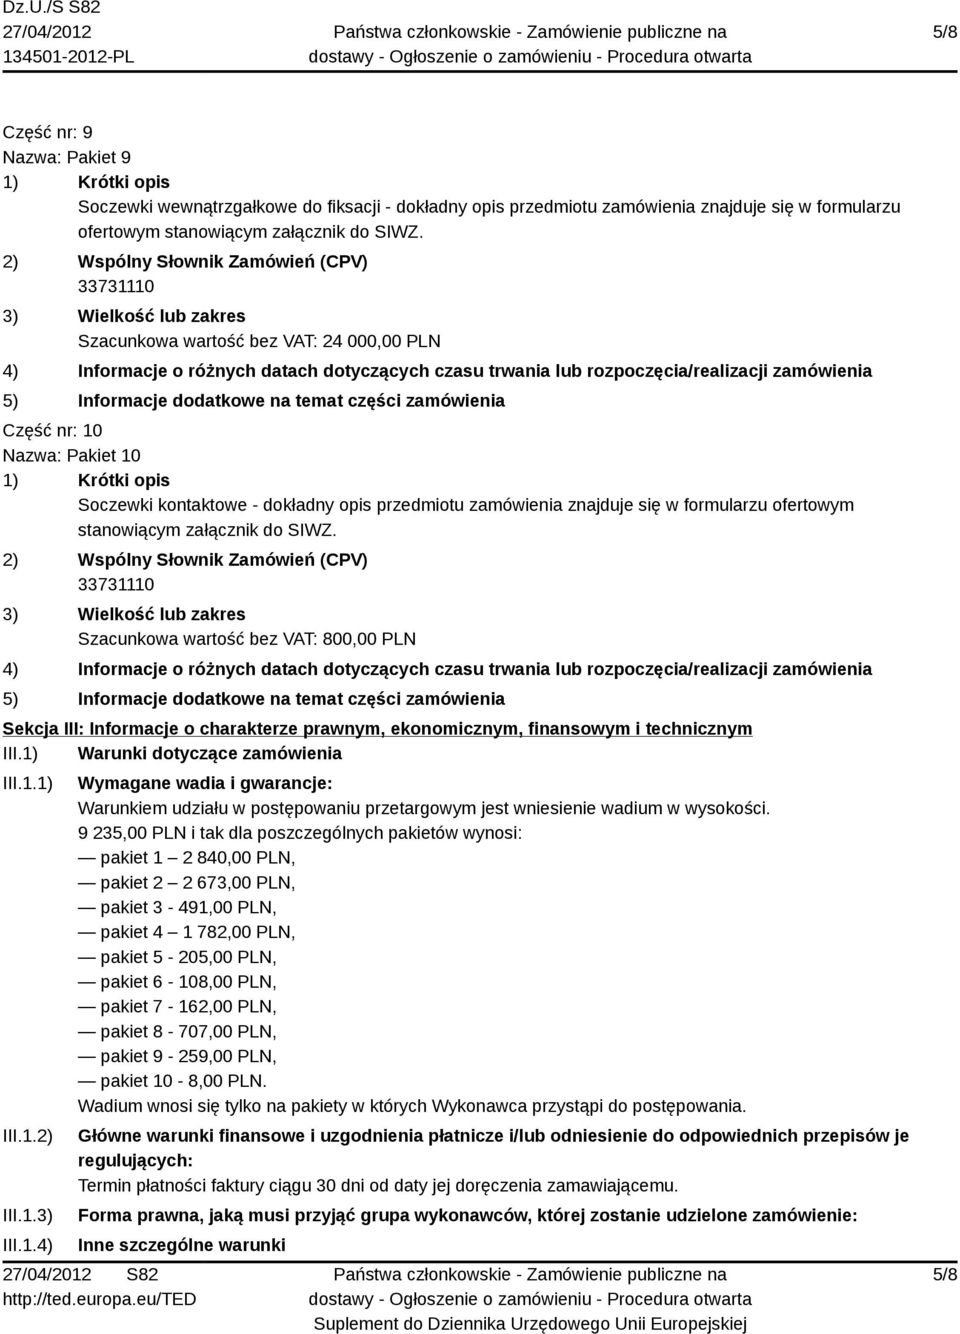 Szacunkowa wartość bez VAT: 800,00 PLN Sekcja III: Informacje o charakterze prawnym, ekonomicznym, finansowym i technicznym III.1)